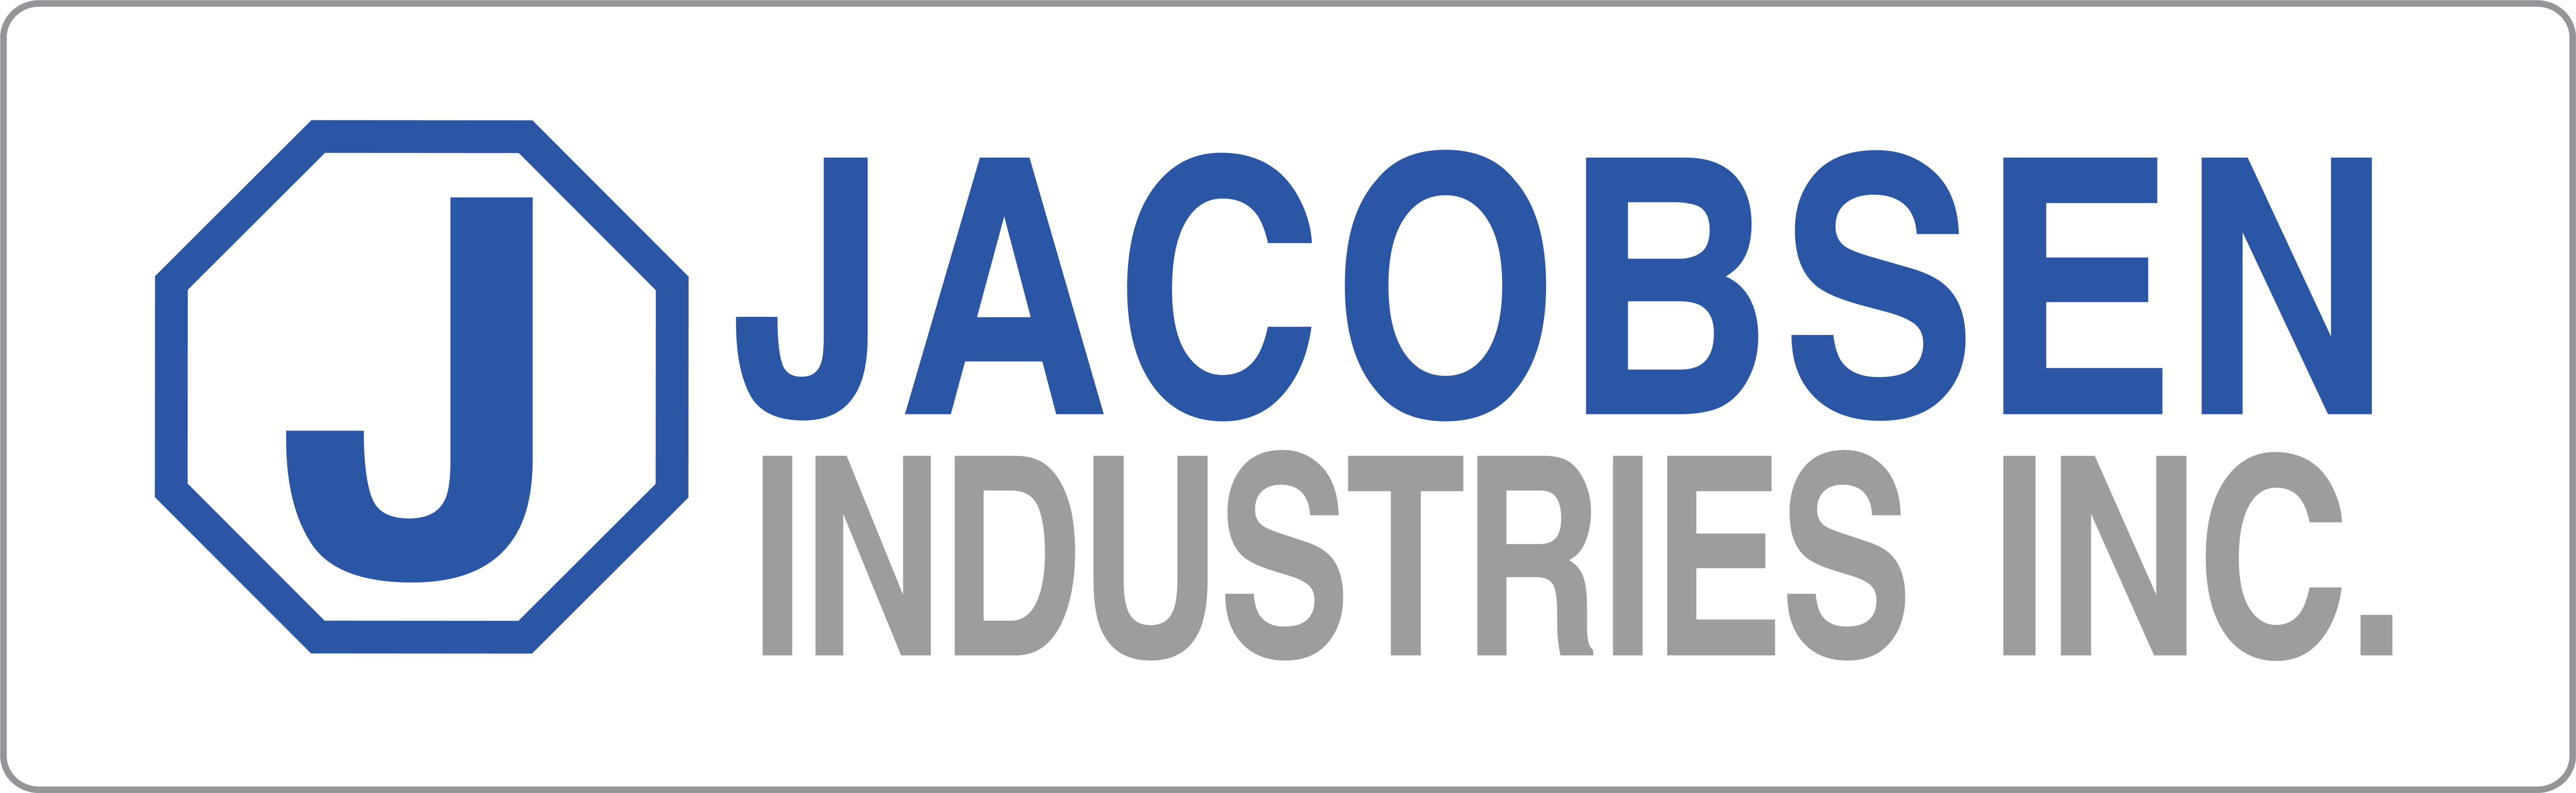 Jacobsen Industries logo